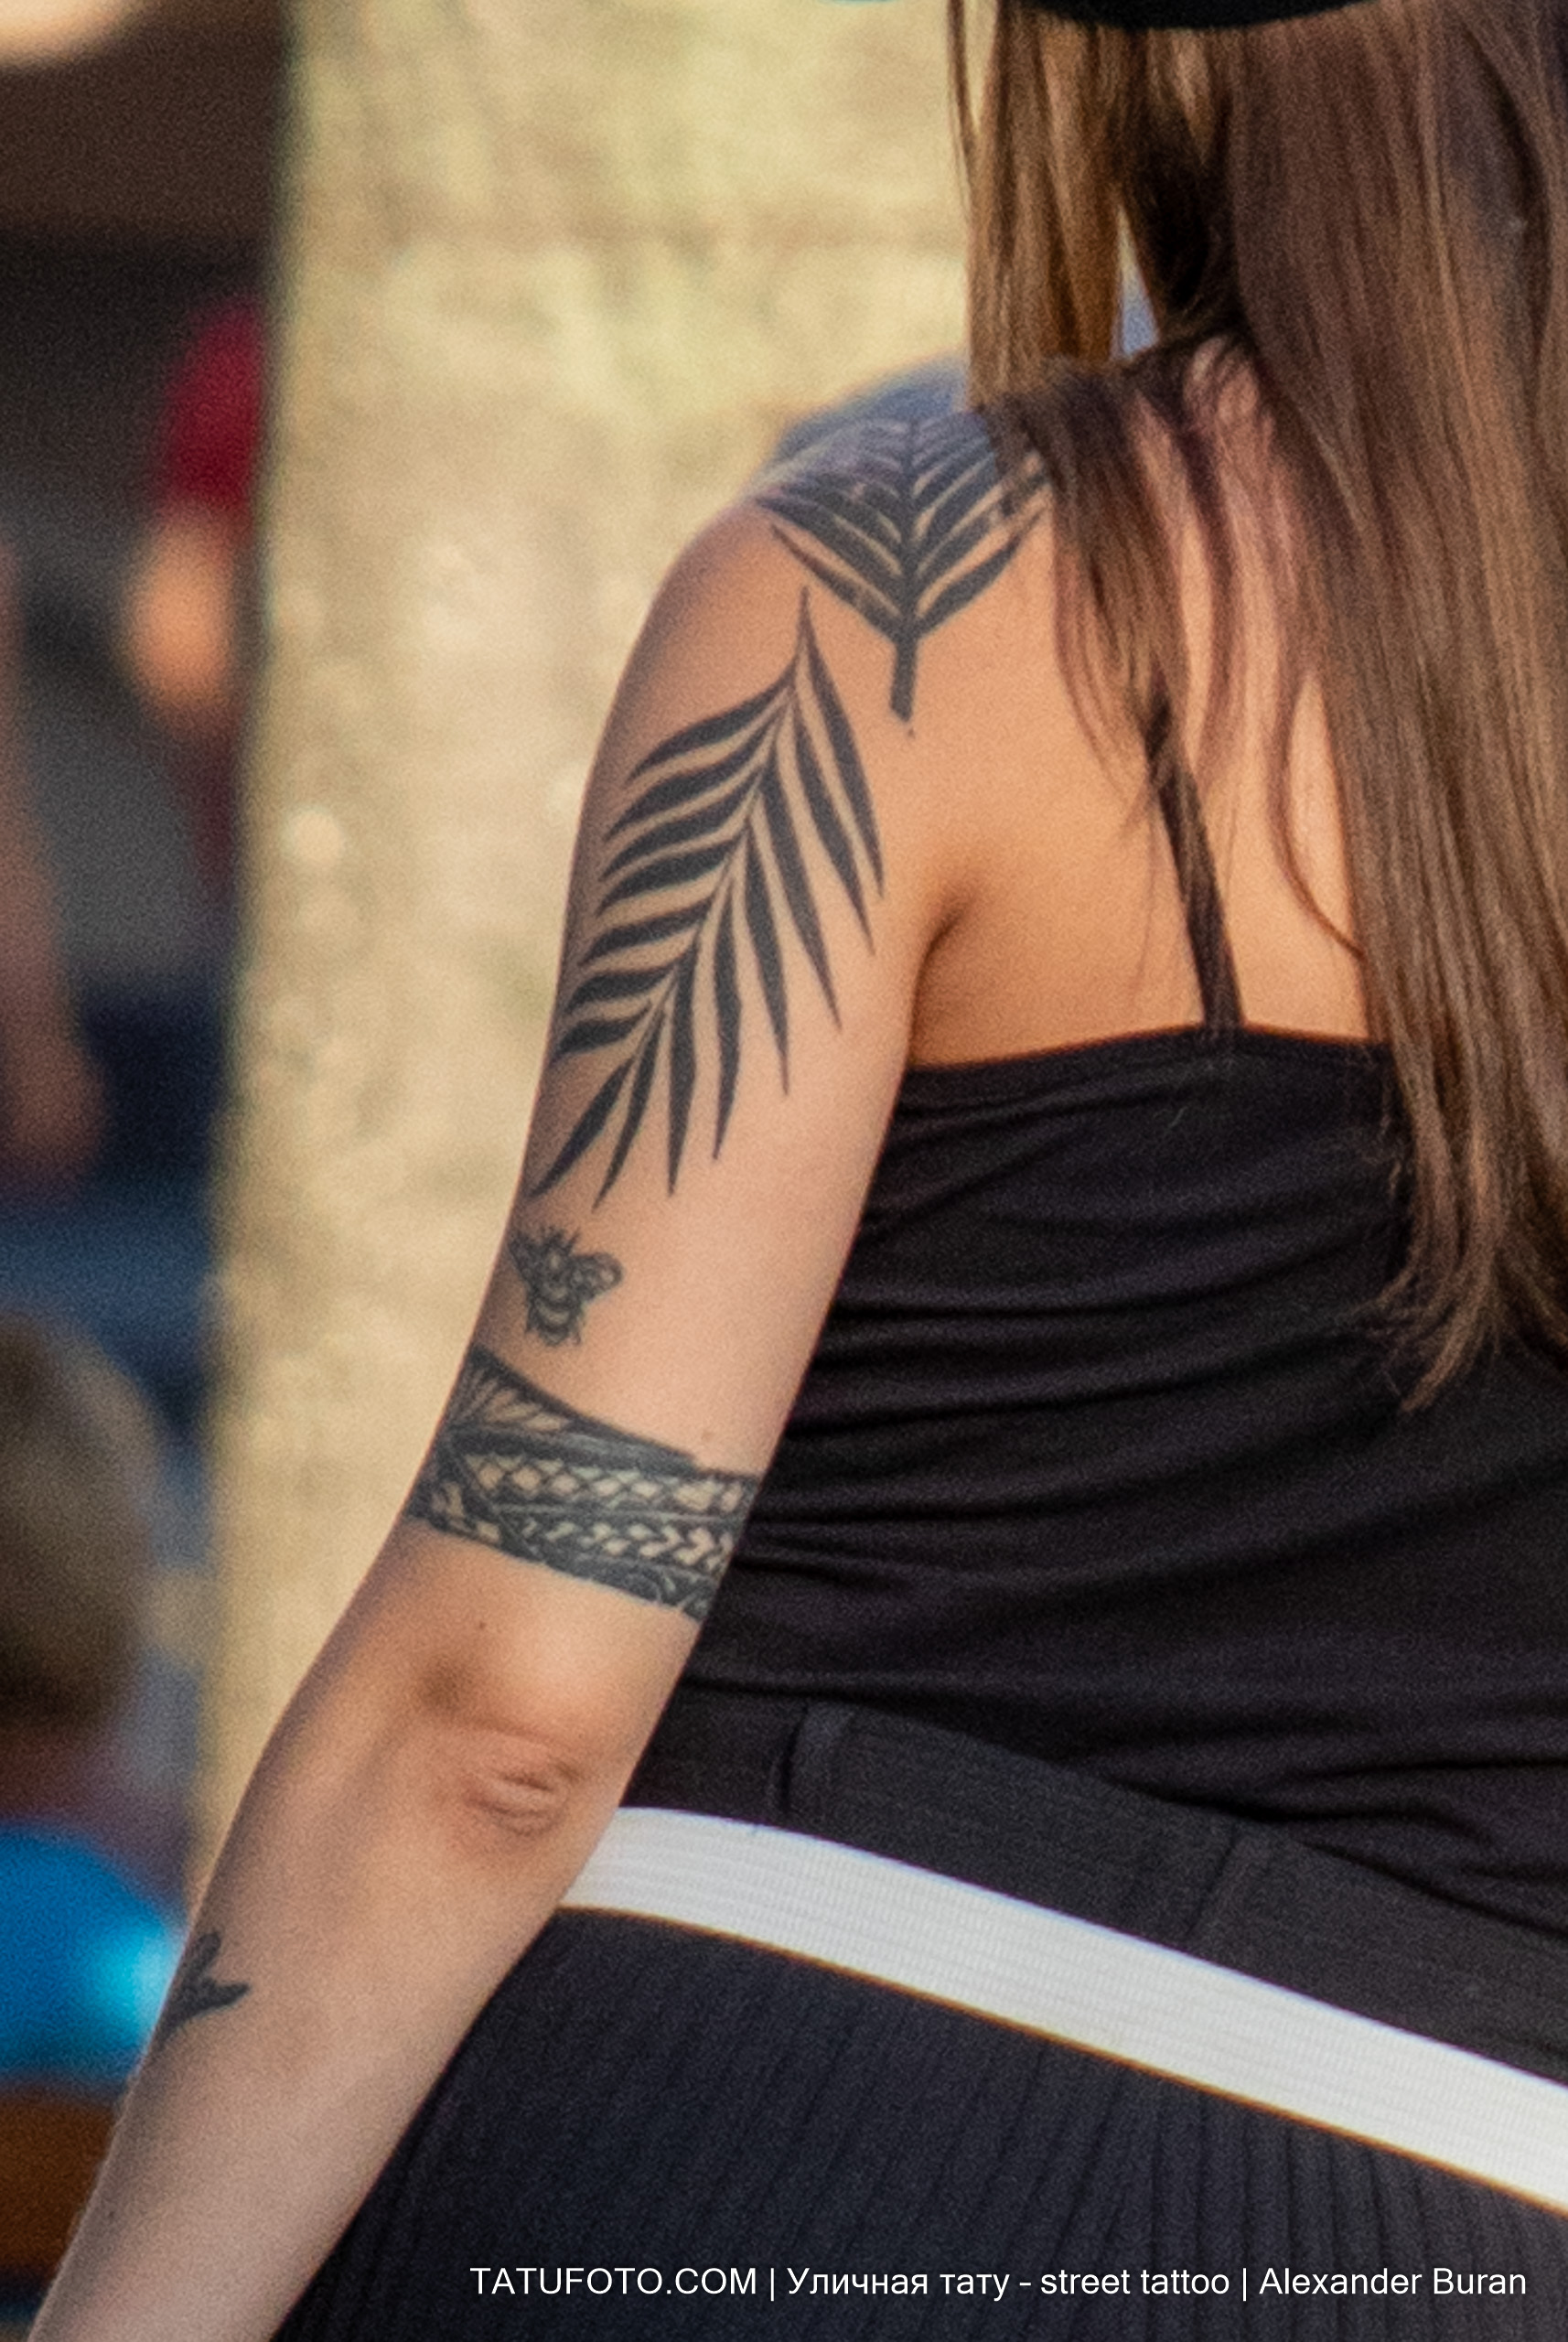 Φύλλα φτέρης τατουάζ και ένα βραχιόλι στο αριστερό χέρι ενός κοριτσιού 2  tatufoto.com - τατουάζ στο δρόμο - tatufoto.com